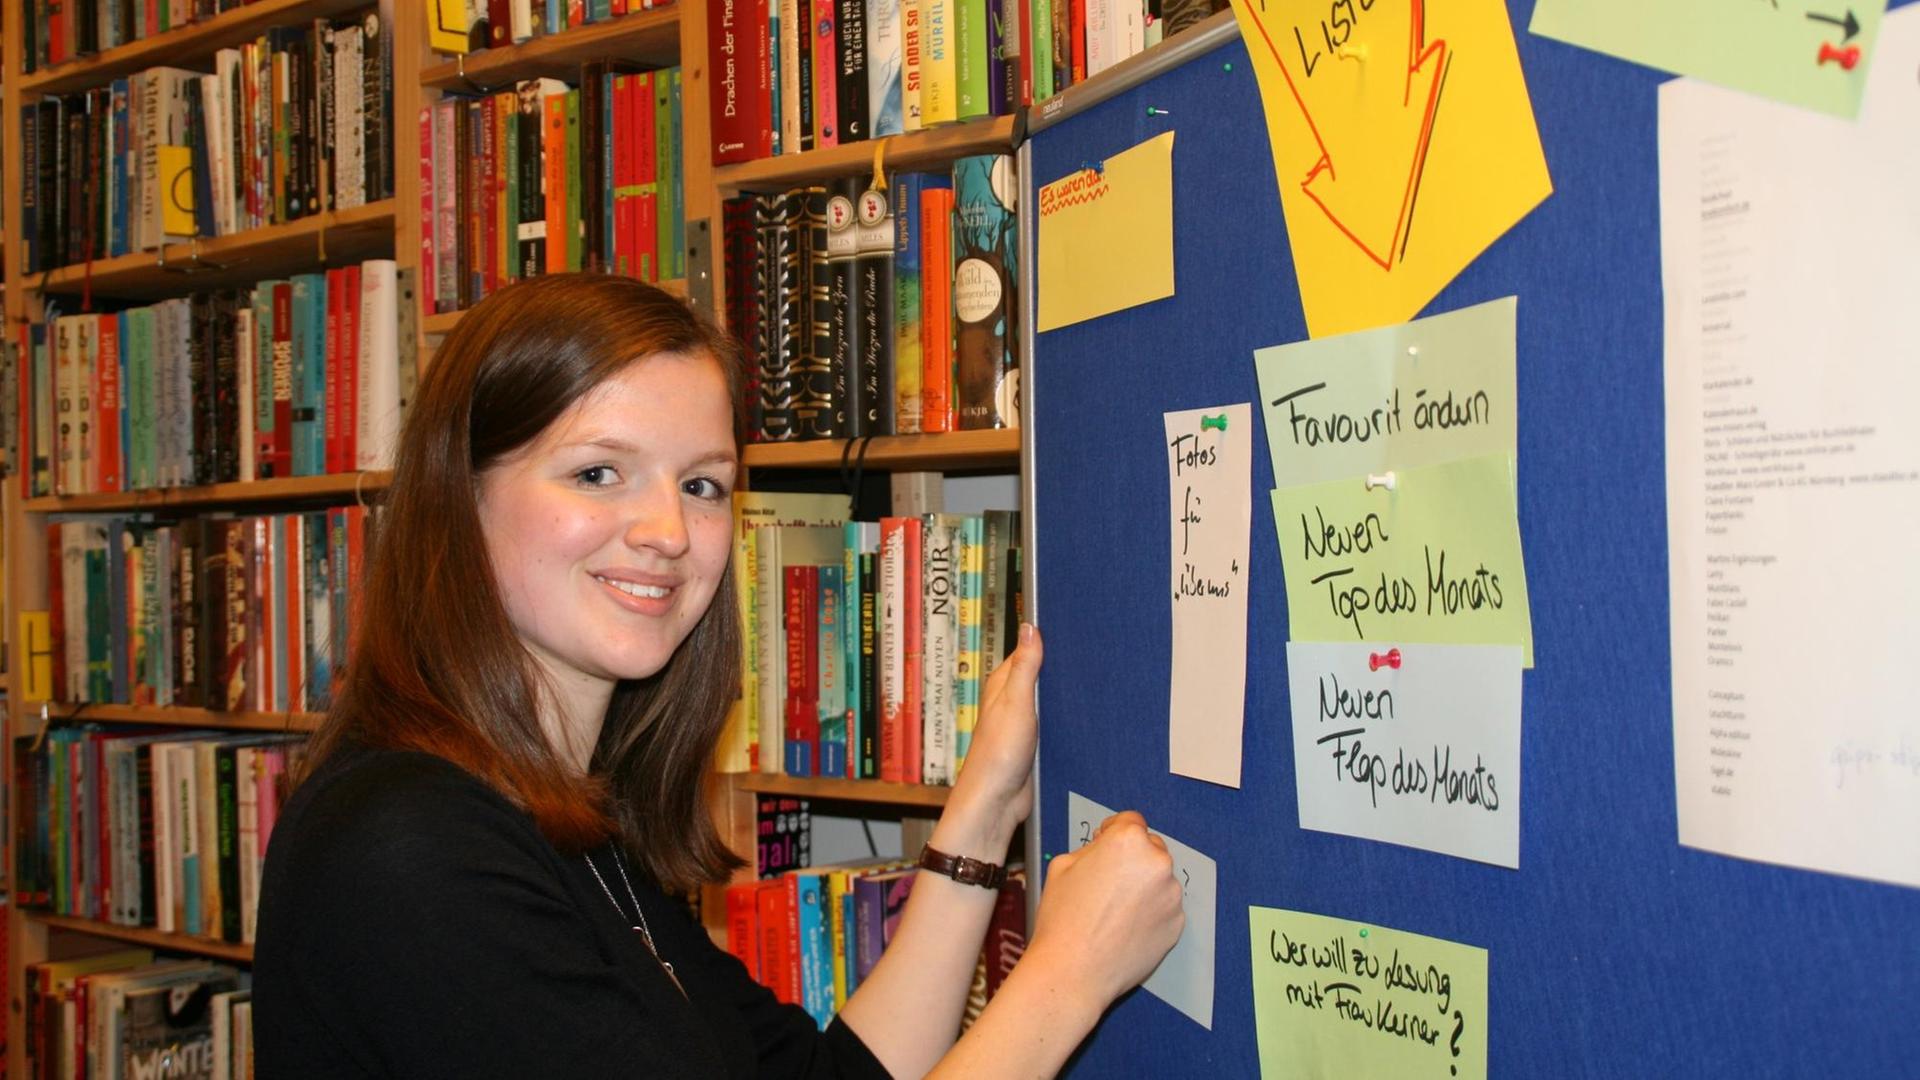 Die 21-jährige Freya Schwachenwald aus Lübeck wurde von Bundespräsident Joachim Gauck mit der Bundesverdienstmedaille für Leseförderung ausgezeichnet.